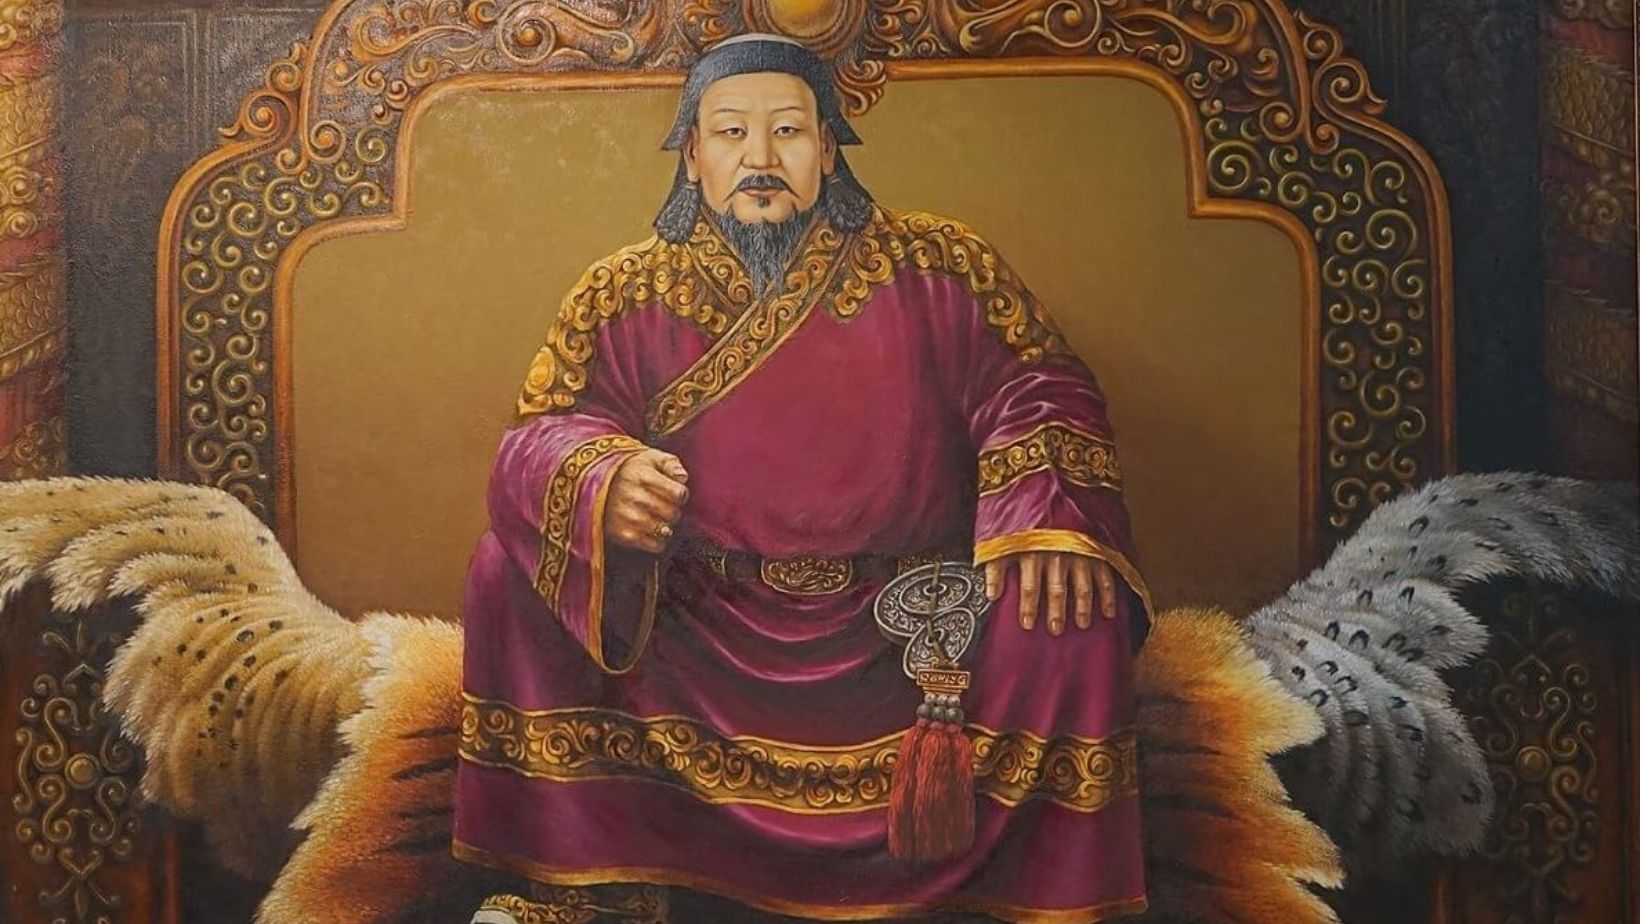 Yuan Dynasty